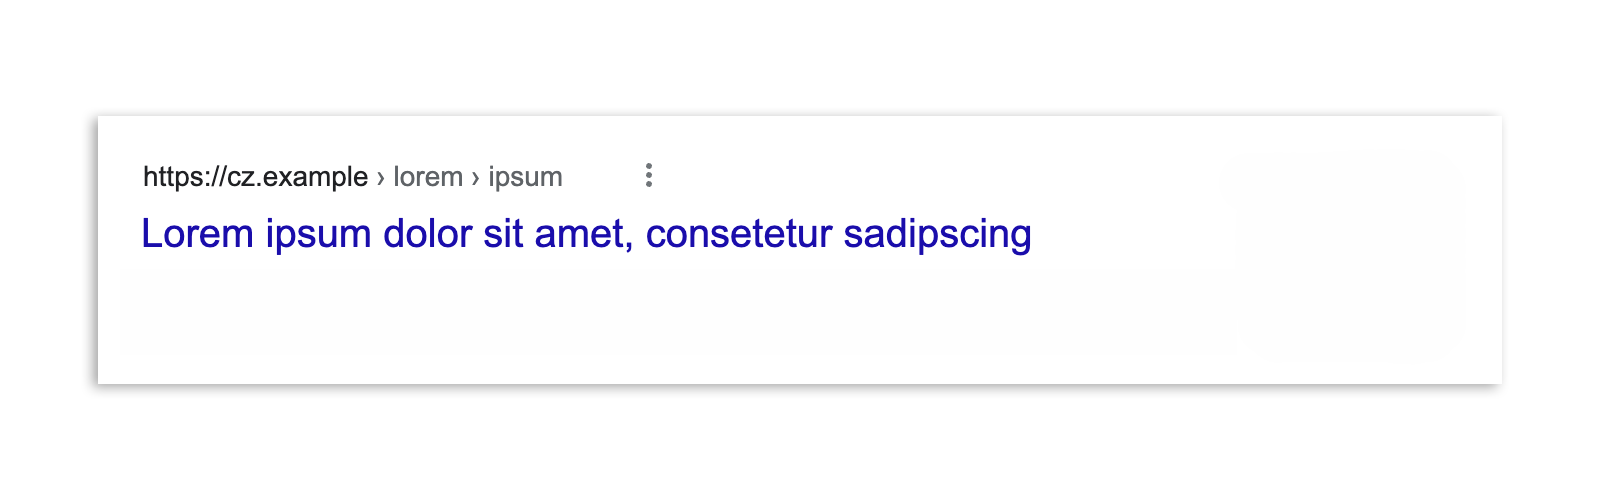 Resultado de la Búsqueda de Google en República Checa después de la aplicación de la ley. Solo se muestra el título del artículo y la URL.